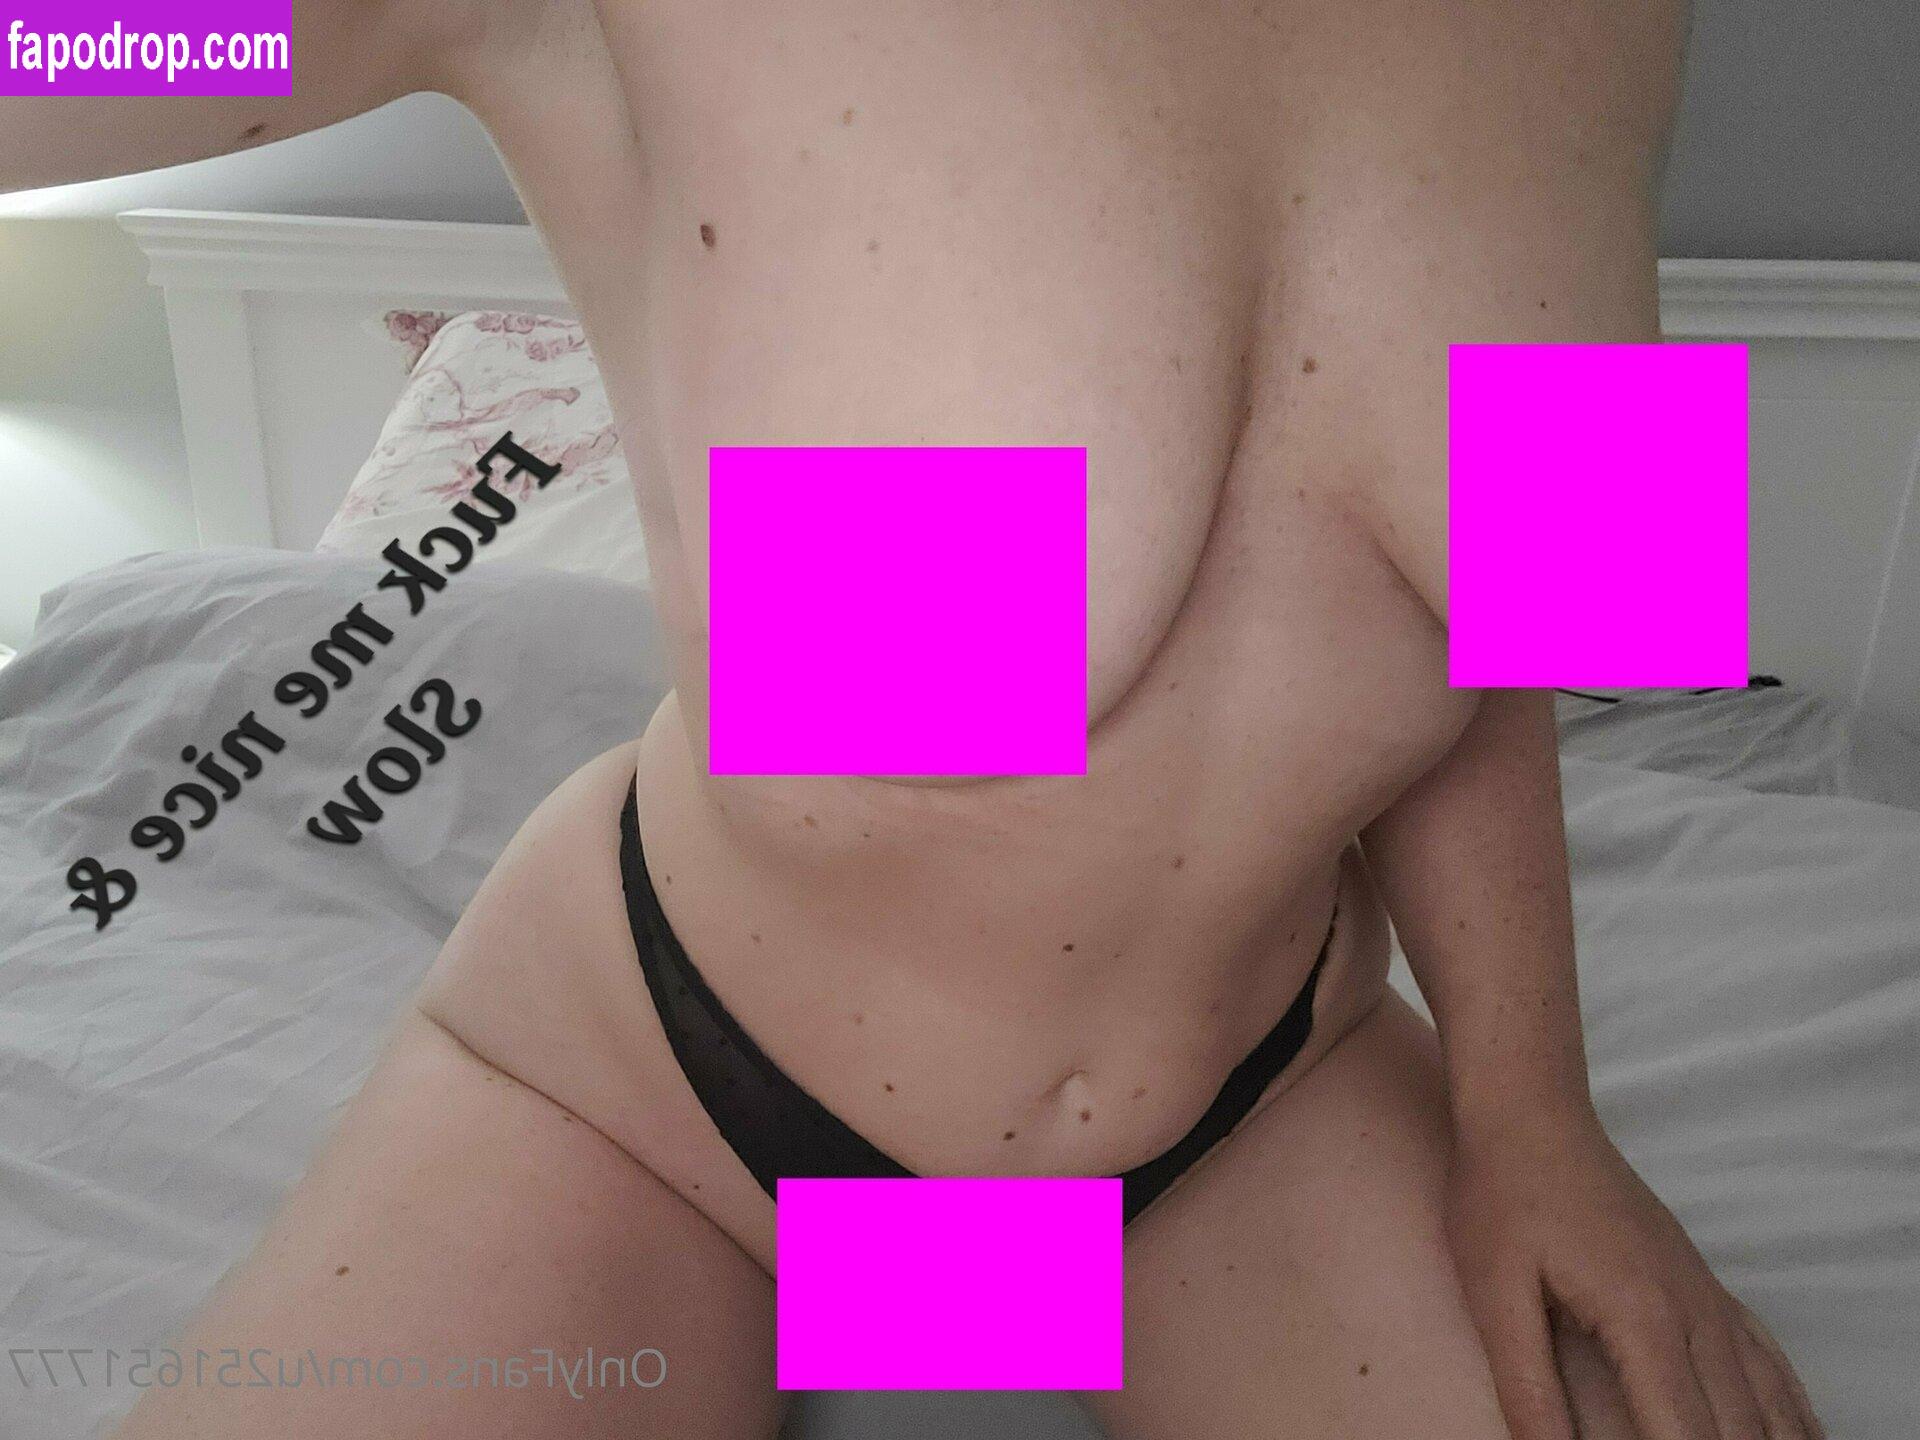 juiletssecret / pretticheekz leak of nude photo #0010 from OnlyFans or Patreon